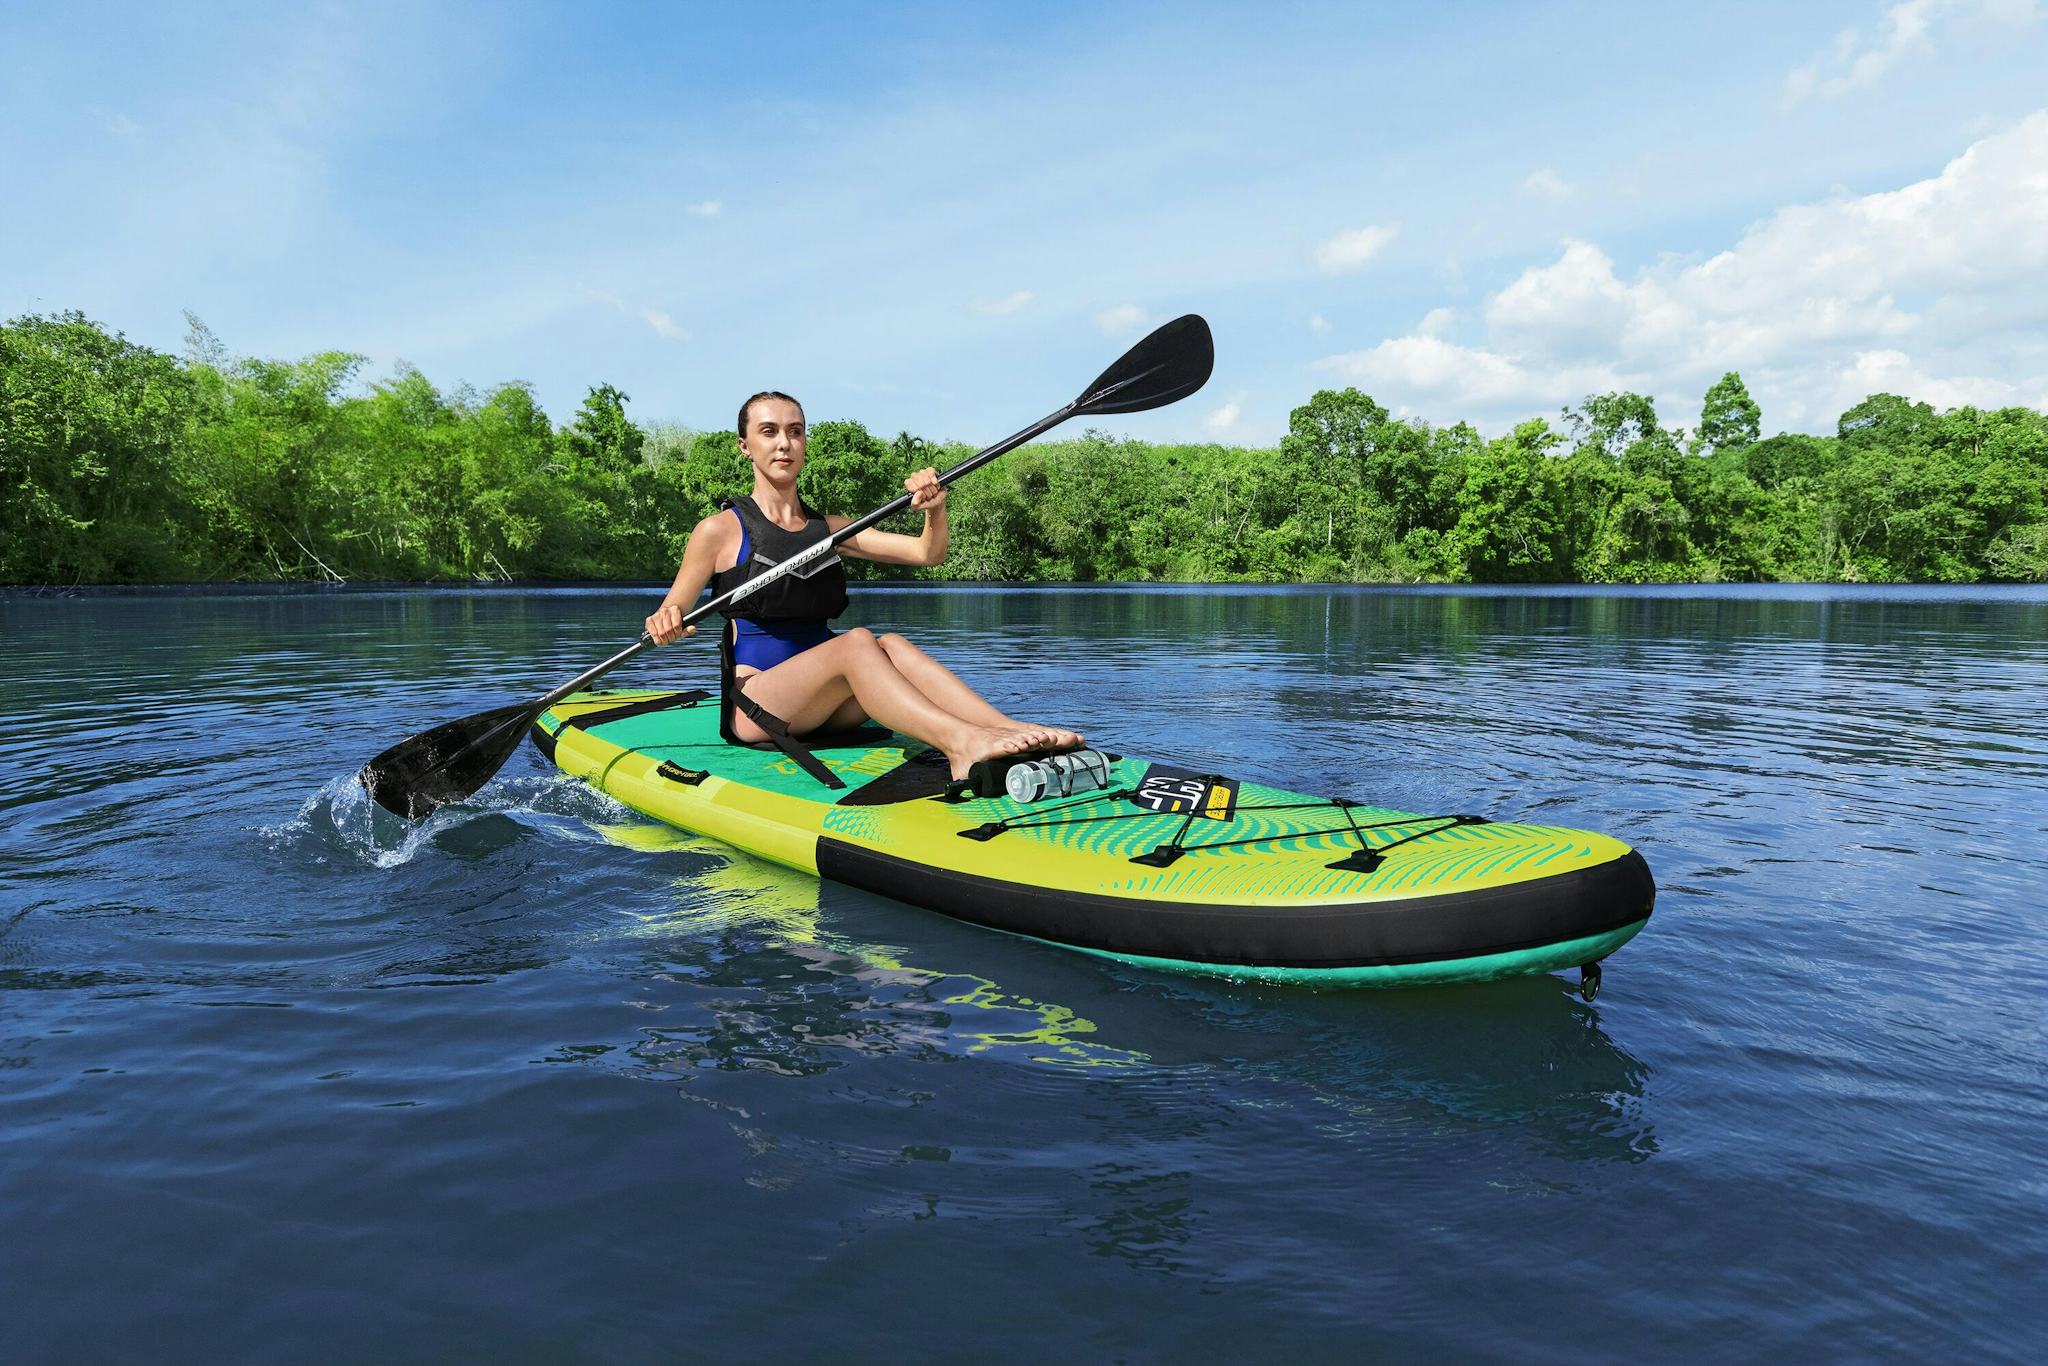 Sports d'eau Paddle SUP Freesoul Tech 340 x 89 x 15 cm transformable en kayak ou en planche à voile, avec siège, cale-pieds, pompe Bestway 7